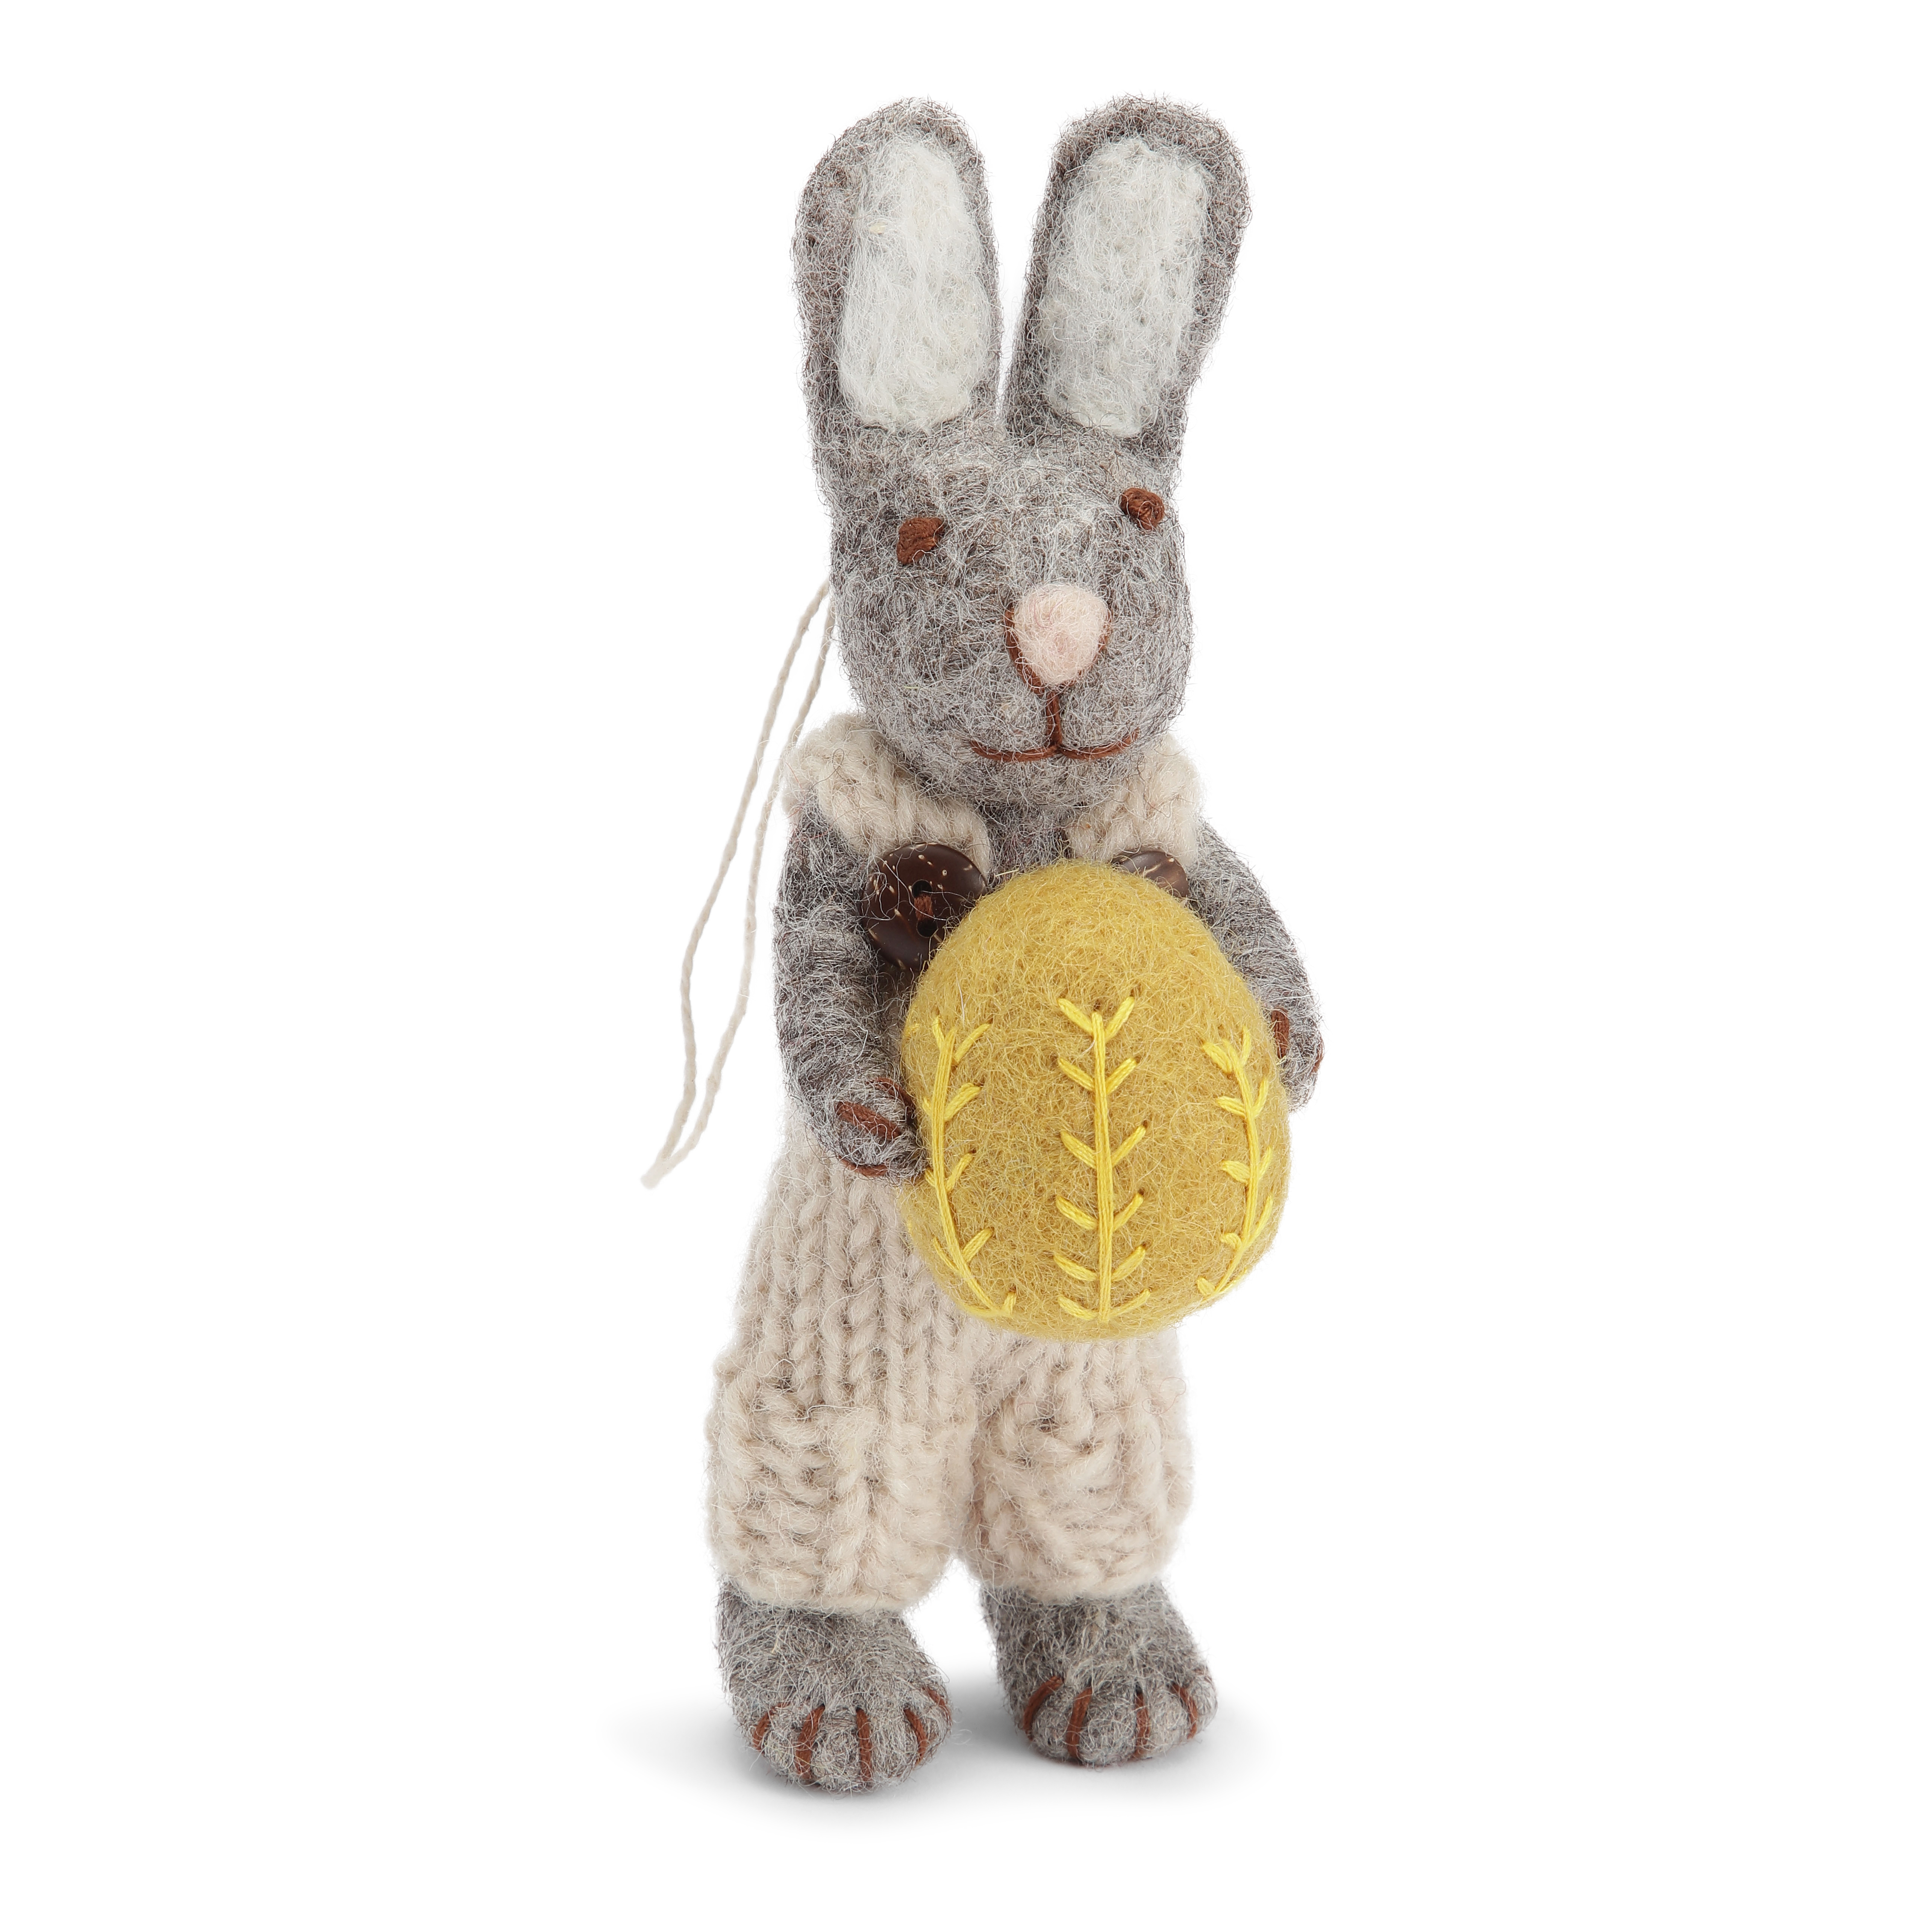 Gry & Sif grauer handgefilzter Hasi mit hellgrauer Hose und gelbem Ei 14 cm